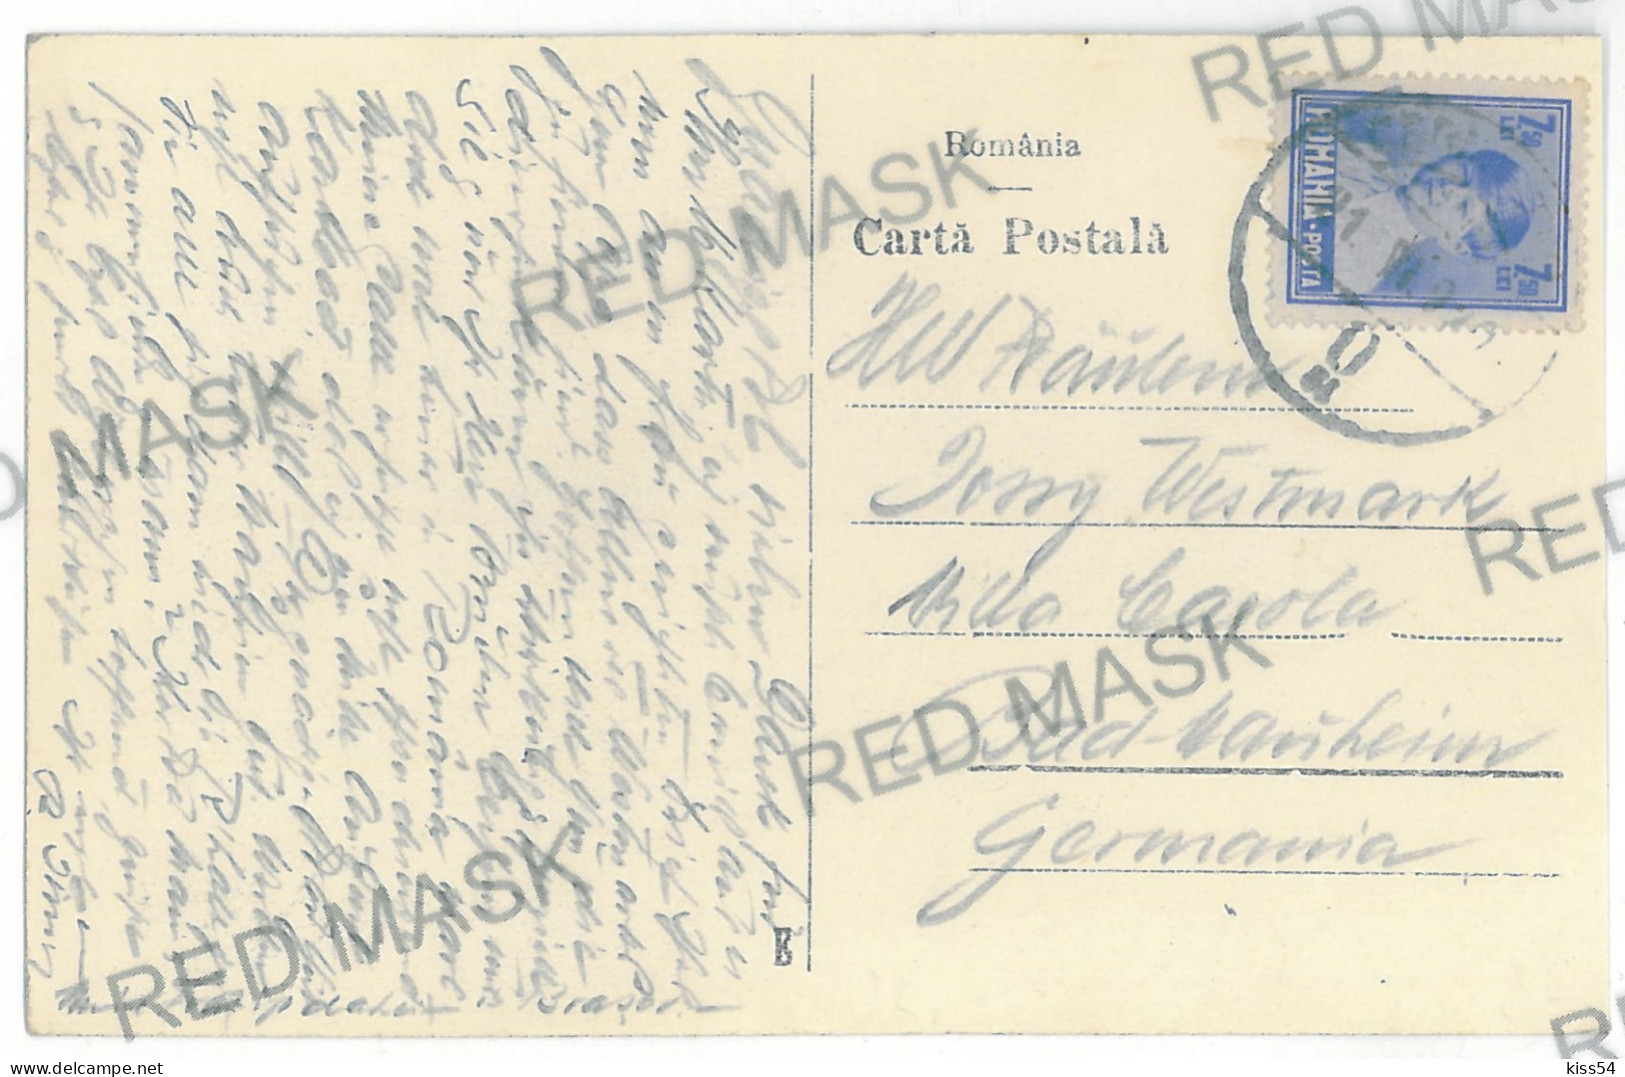 UK 43 - 11465 CZERNOWITZ, Bukowina, Railway Station, Tramway, Ukraine - Old Postcard - Used - 1930 - Ucrania